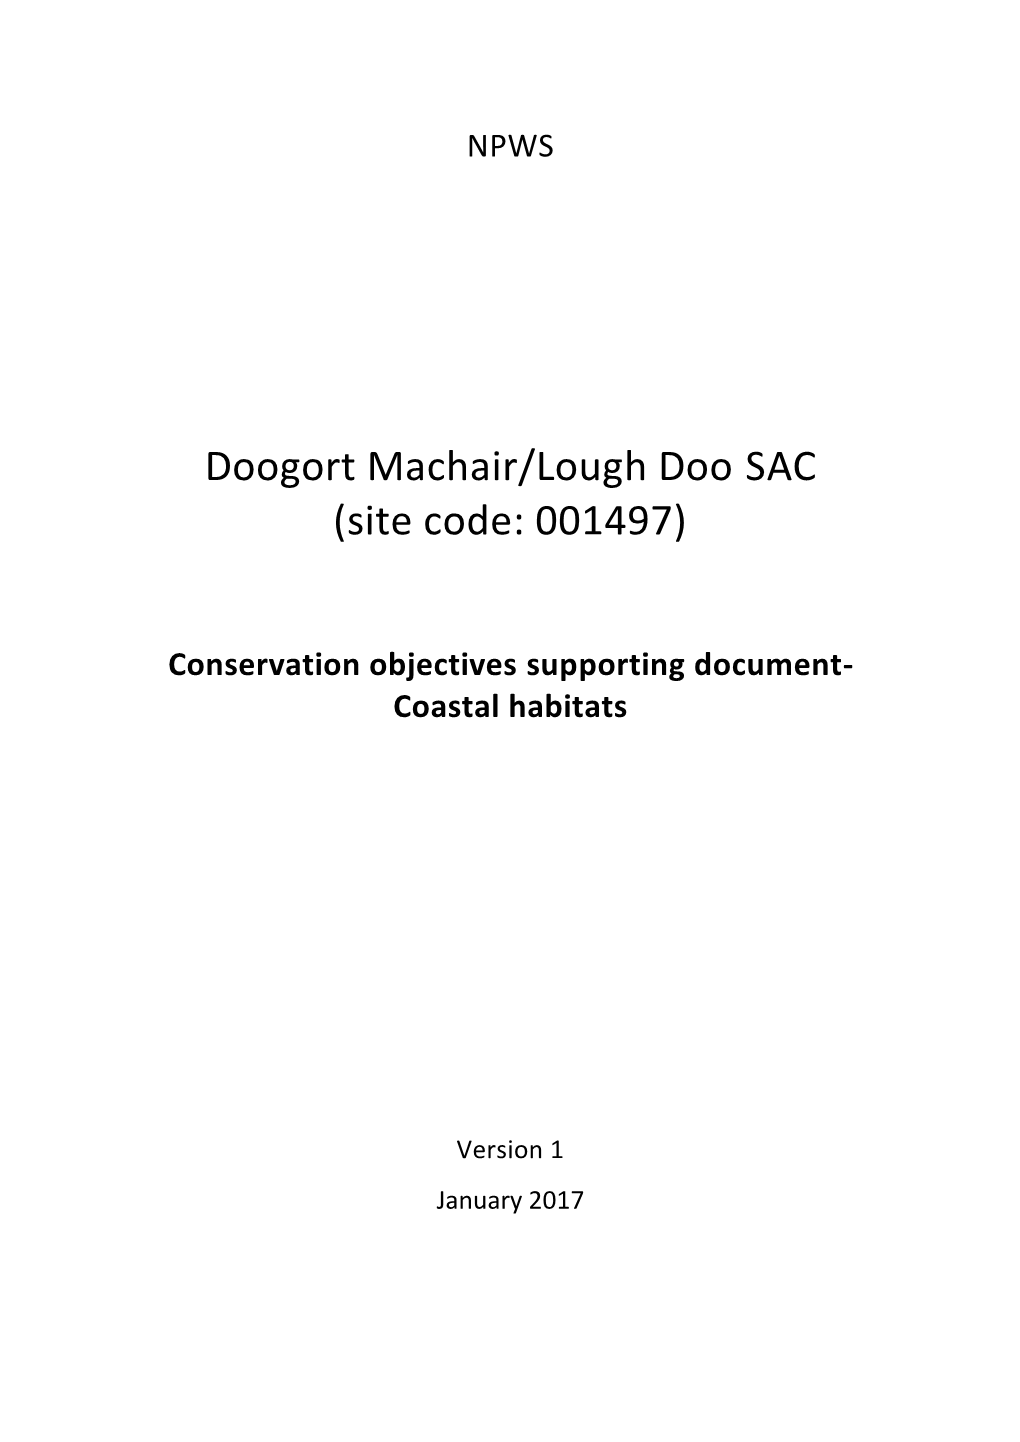 Doogort Machair/Lough Doo SAC (Site Code: 001497)